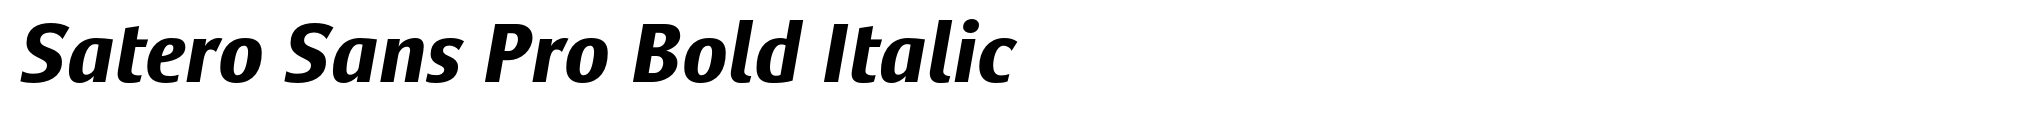 Satero Sans Pro Bold Italic image